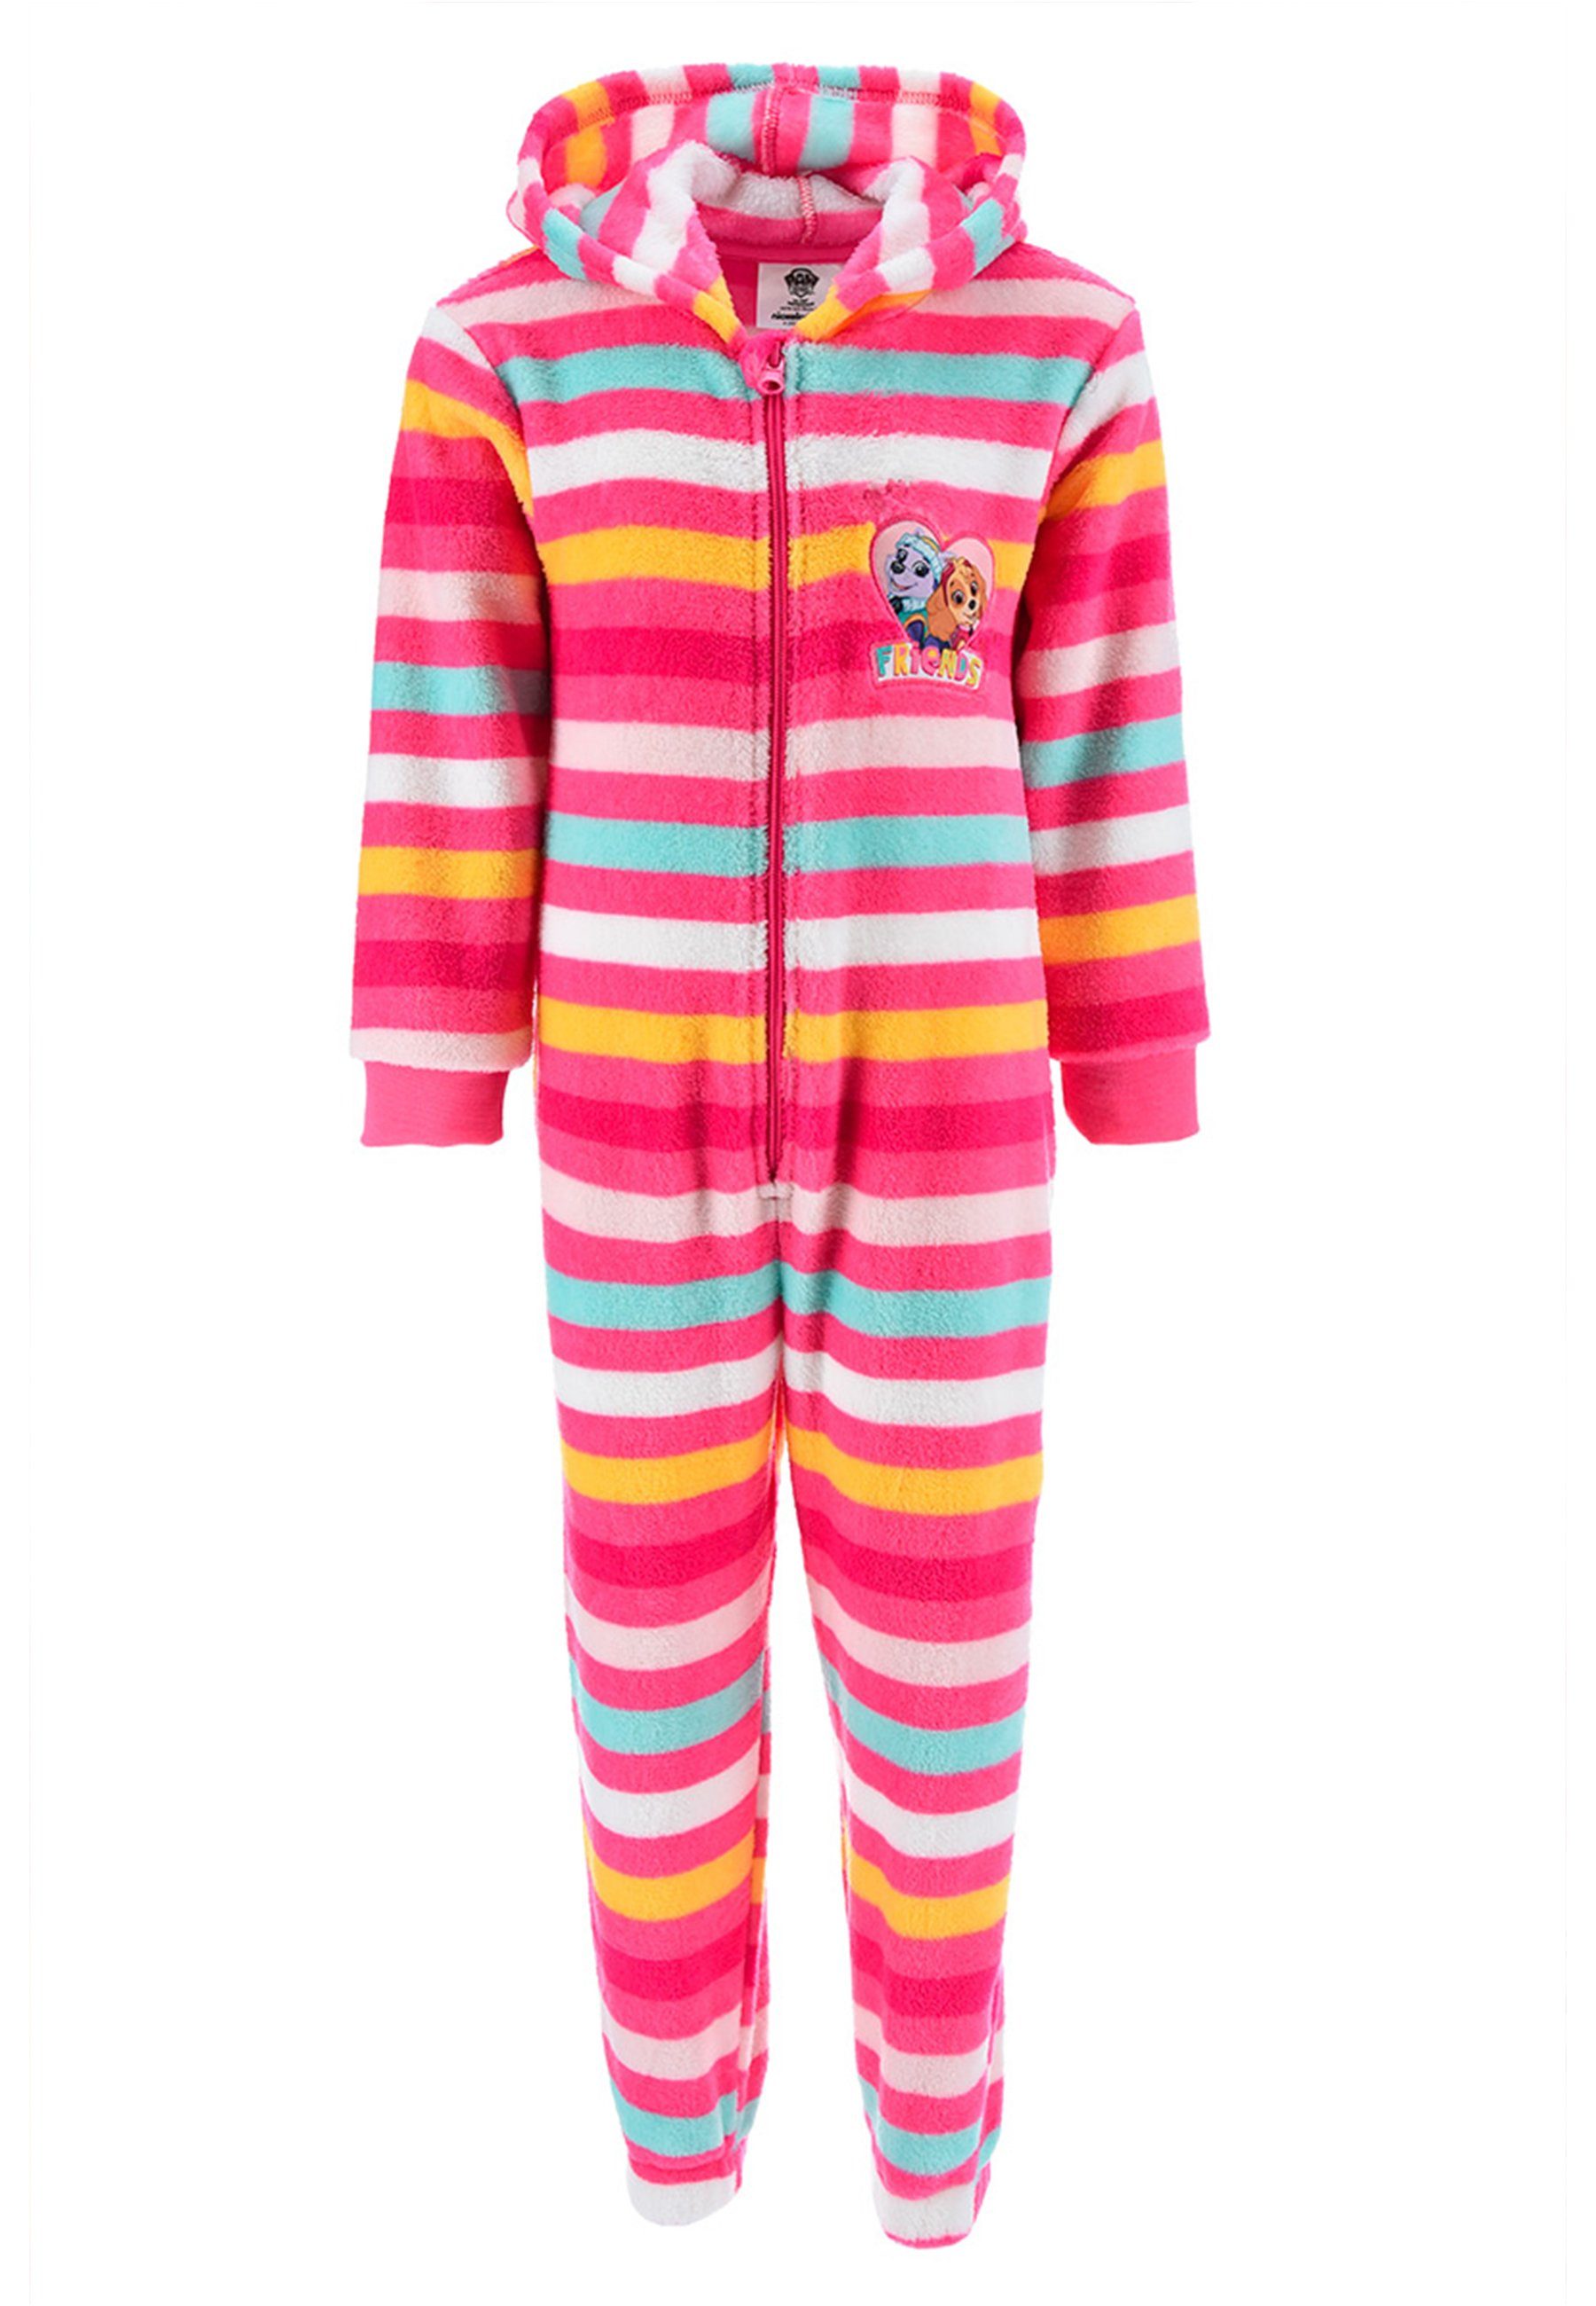 PAW PATROL langarm Overall Pyjama Schlaf Skye Nachtwäsche Everest Schlafanzug